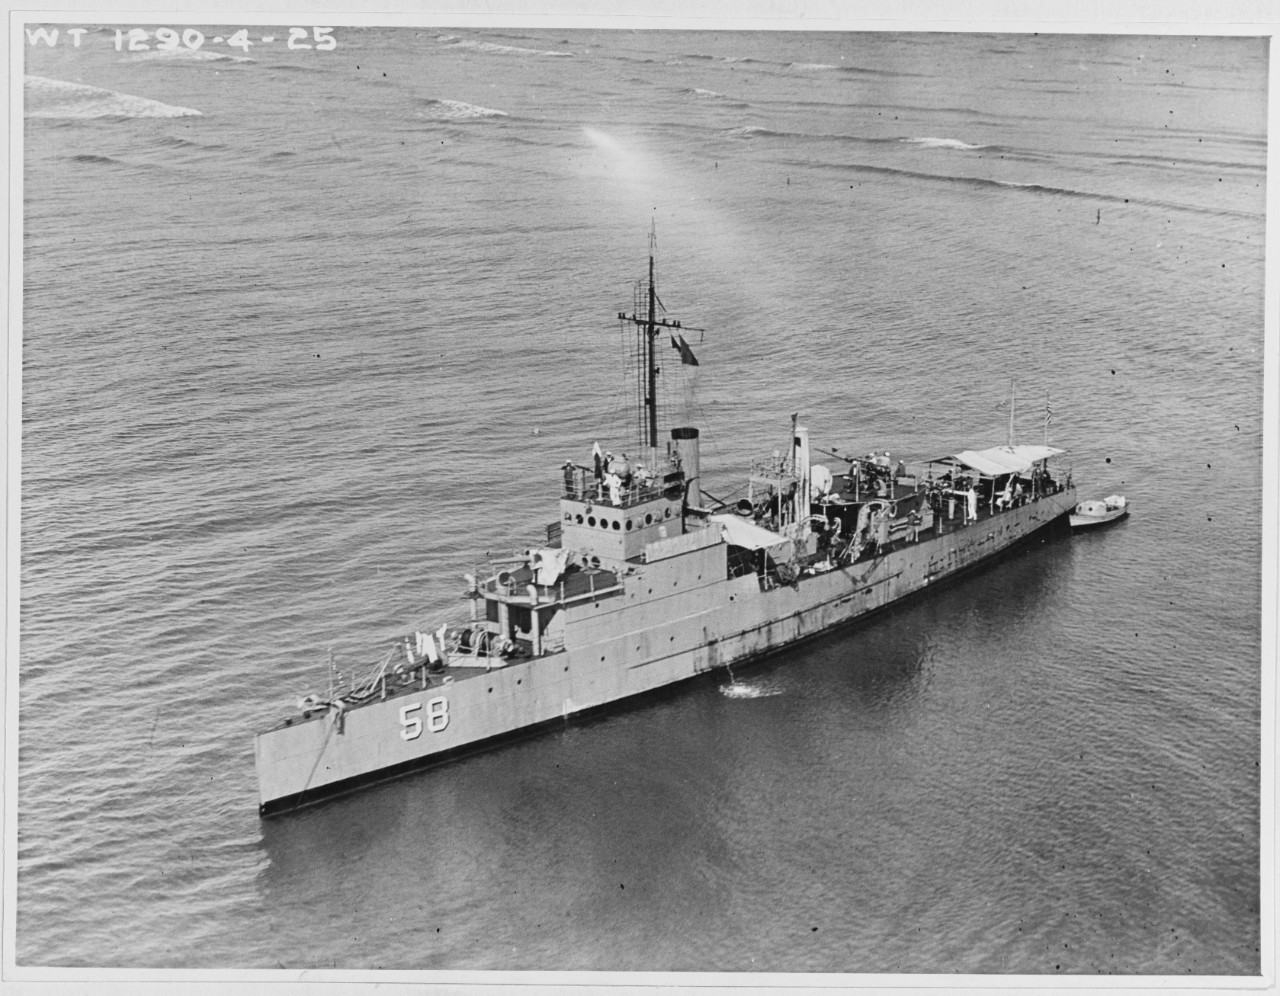 USS EAGLE 58 (PE-58)